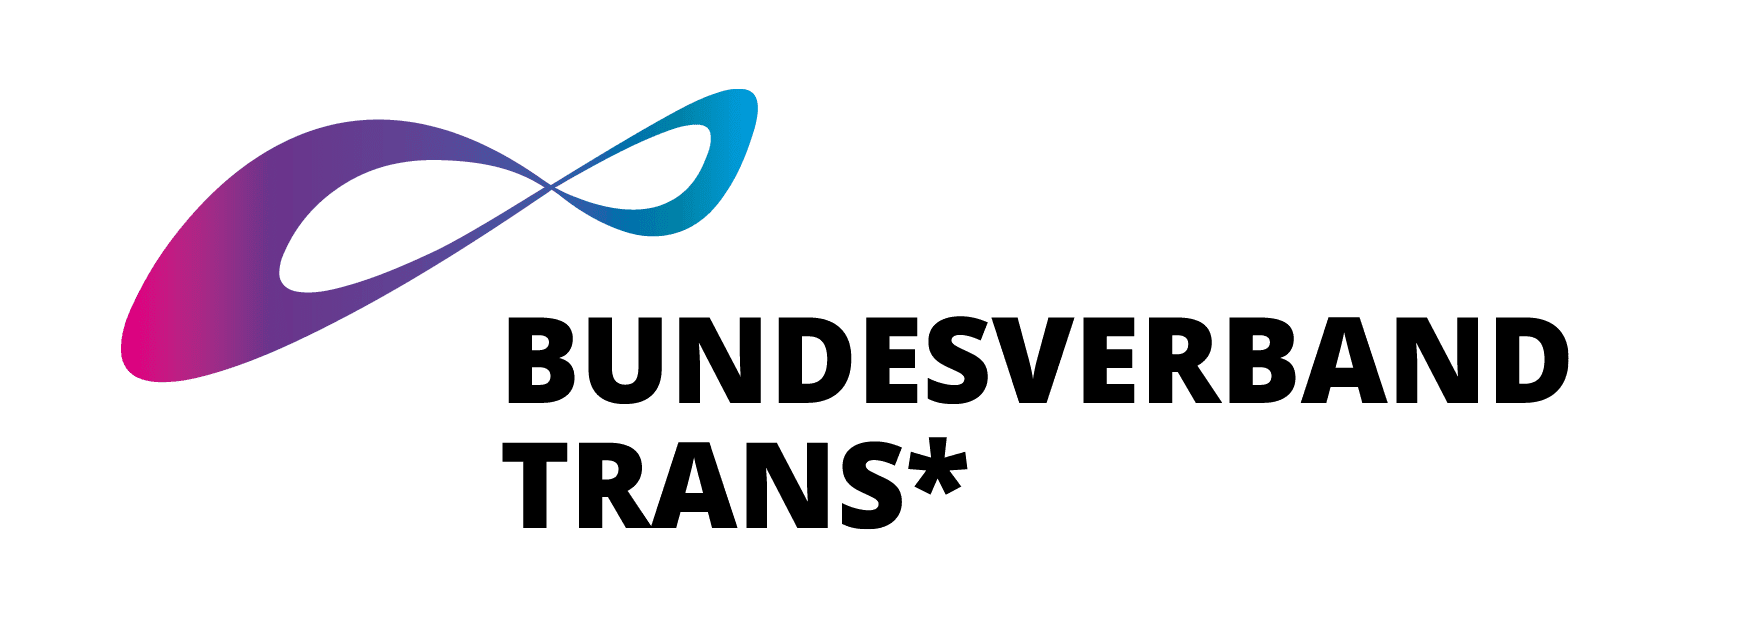 Bundesverband Trans logo